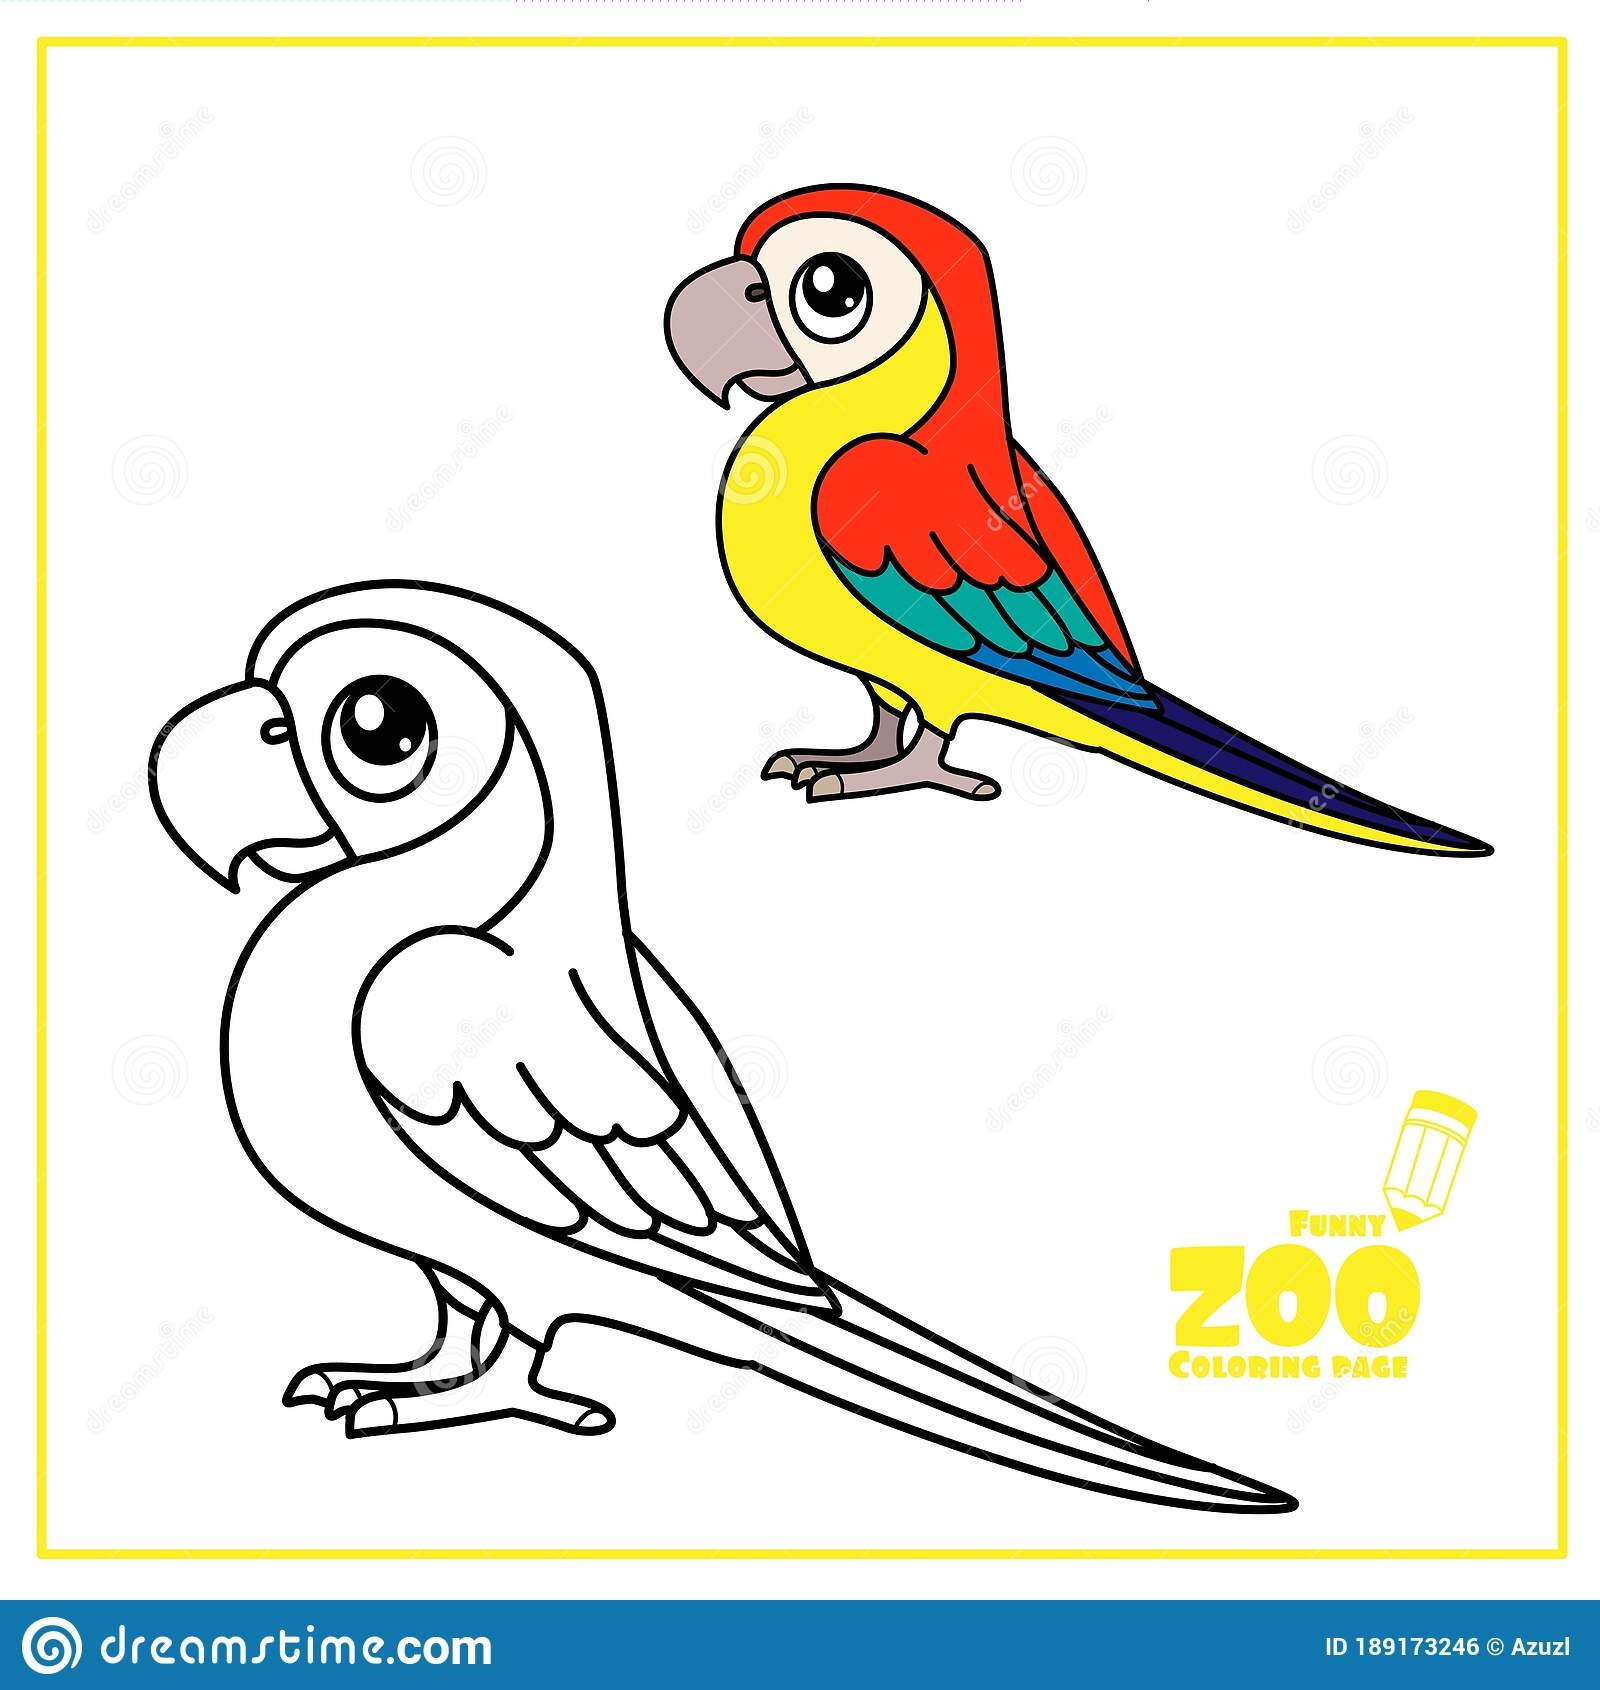 Color a Parrot Worksheet